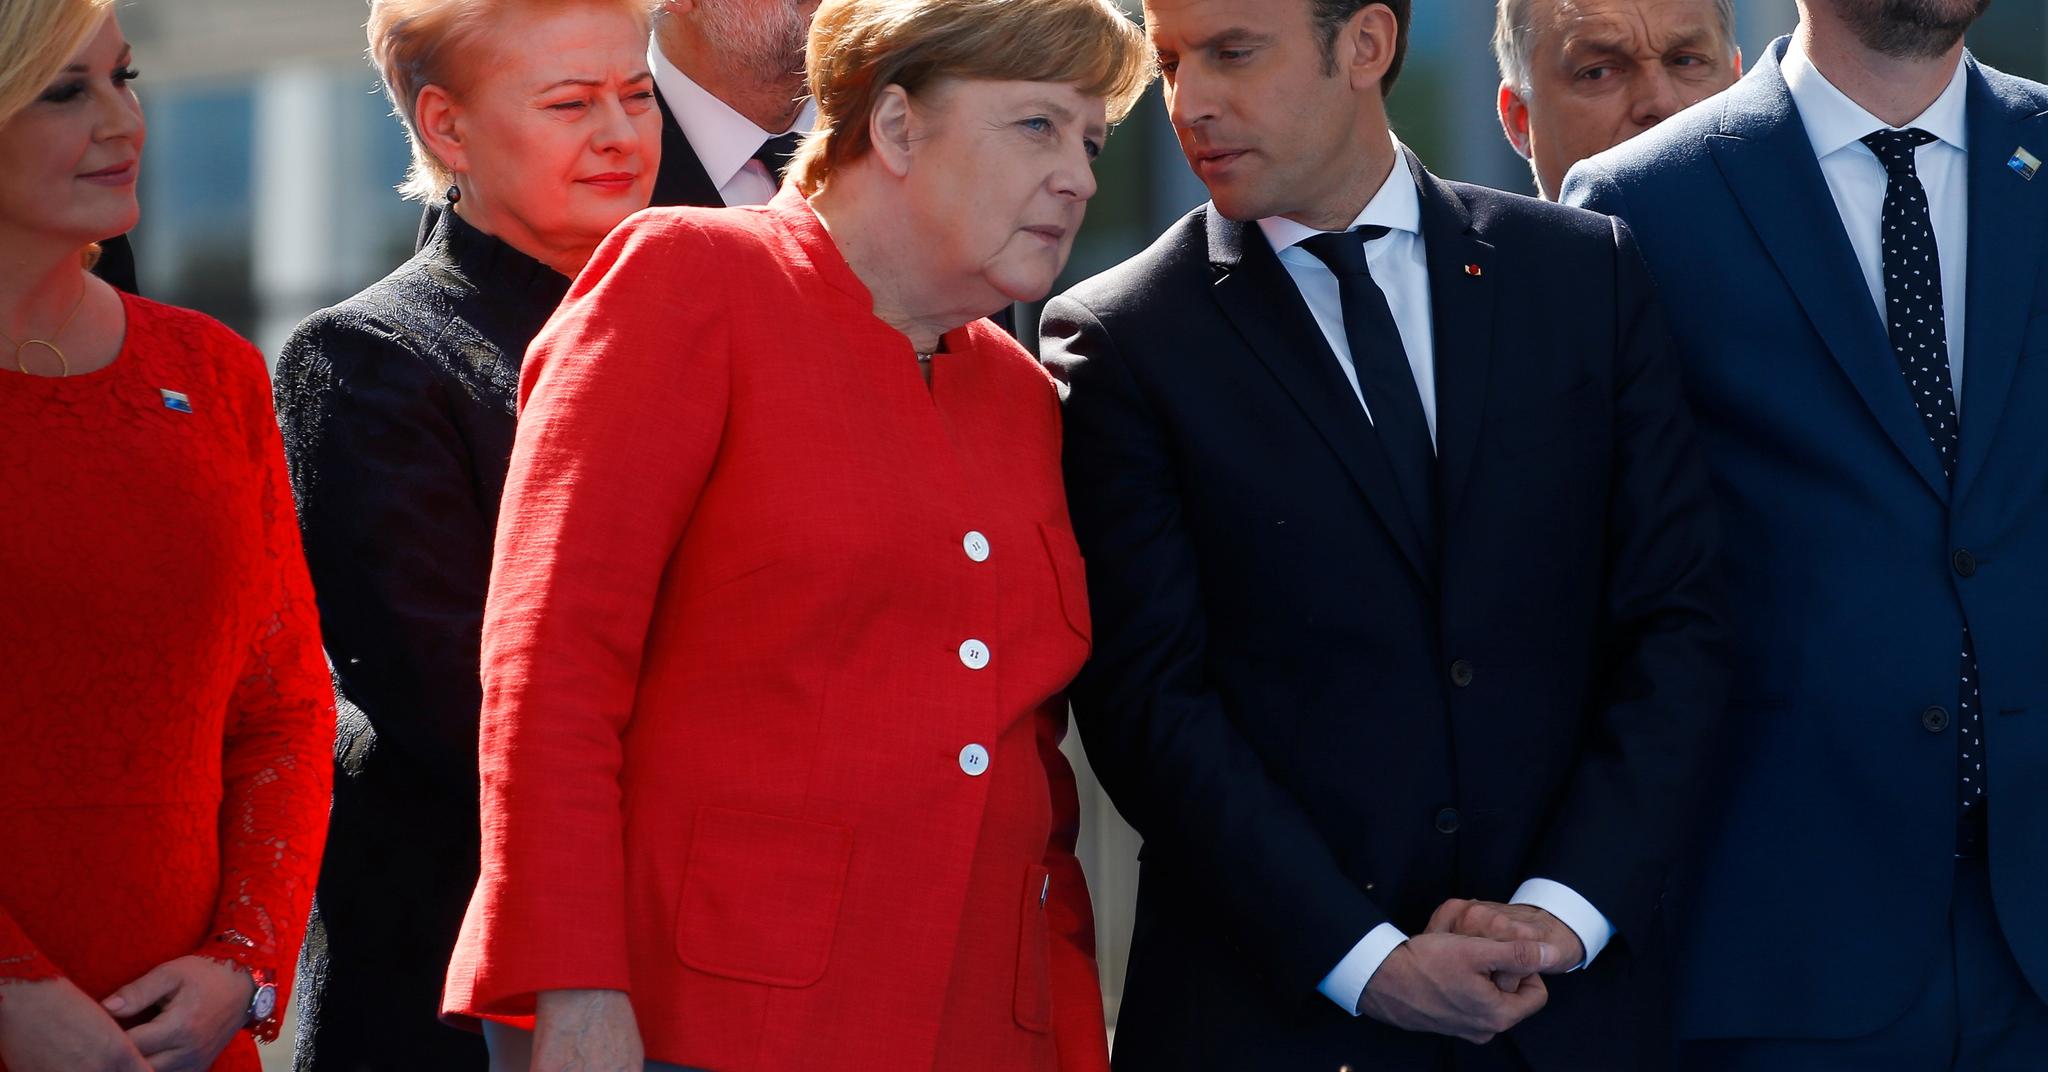 Tysklands forbundskansler Angela Merkel og Frankrikes president Emmanuel Macron snakker godt sammen.